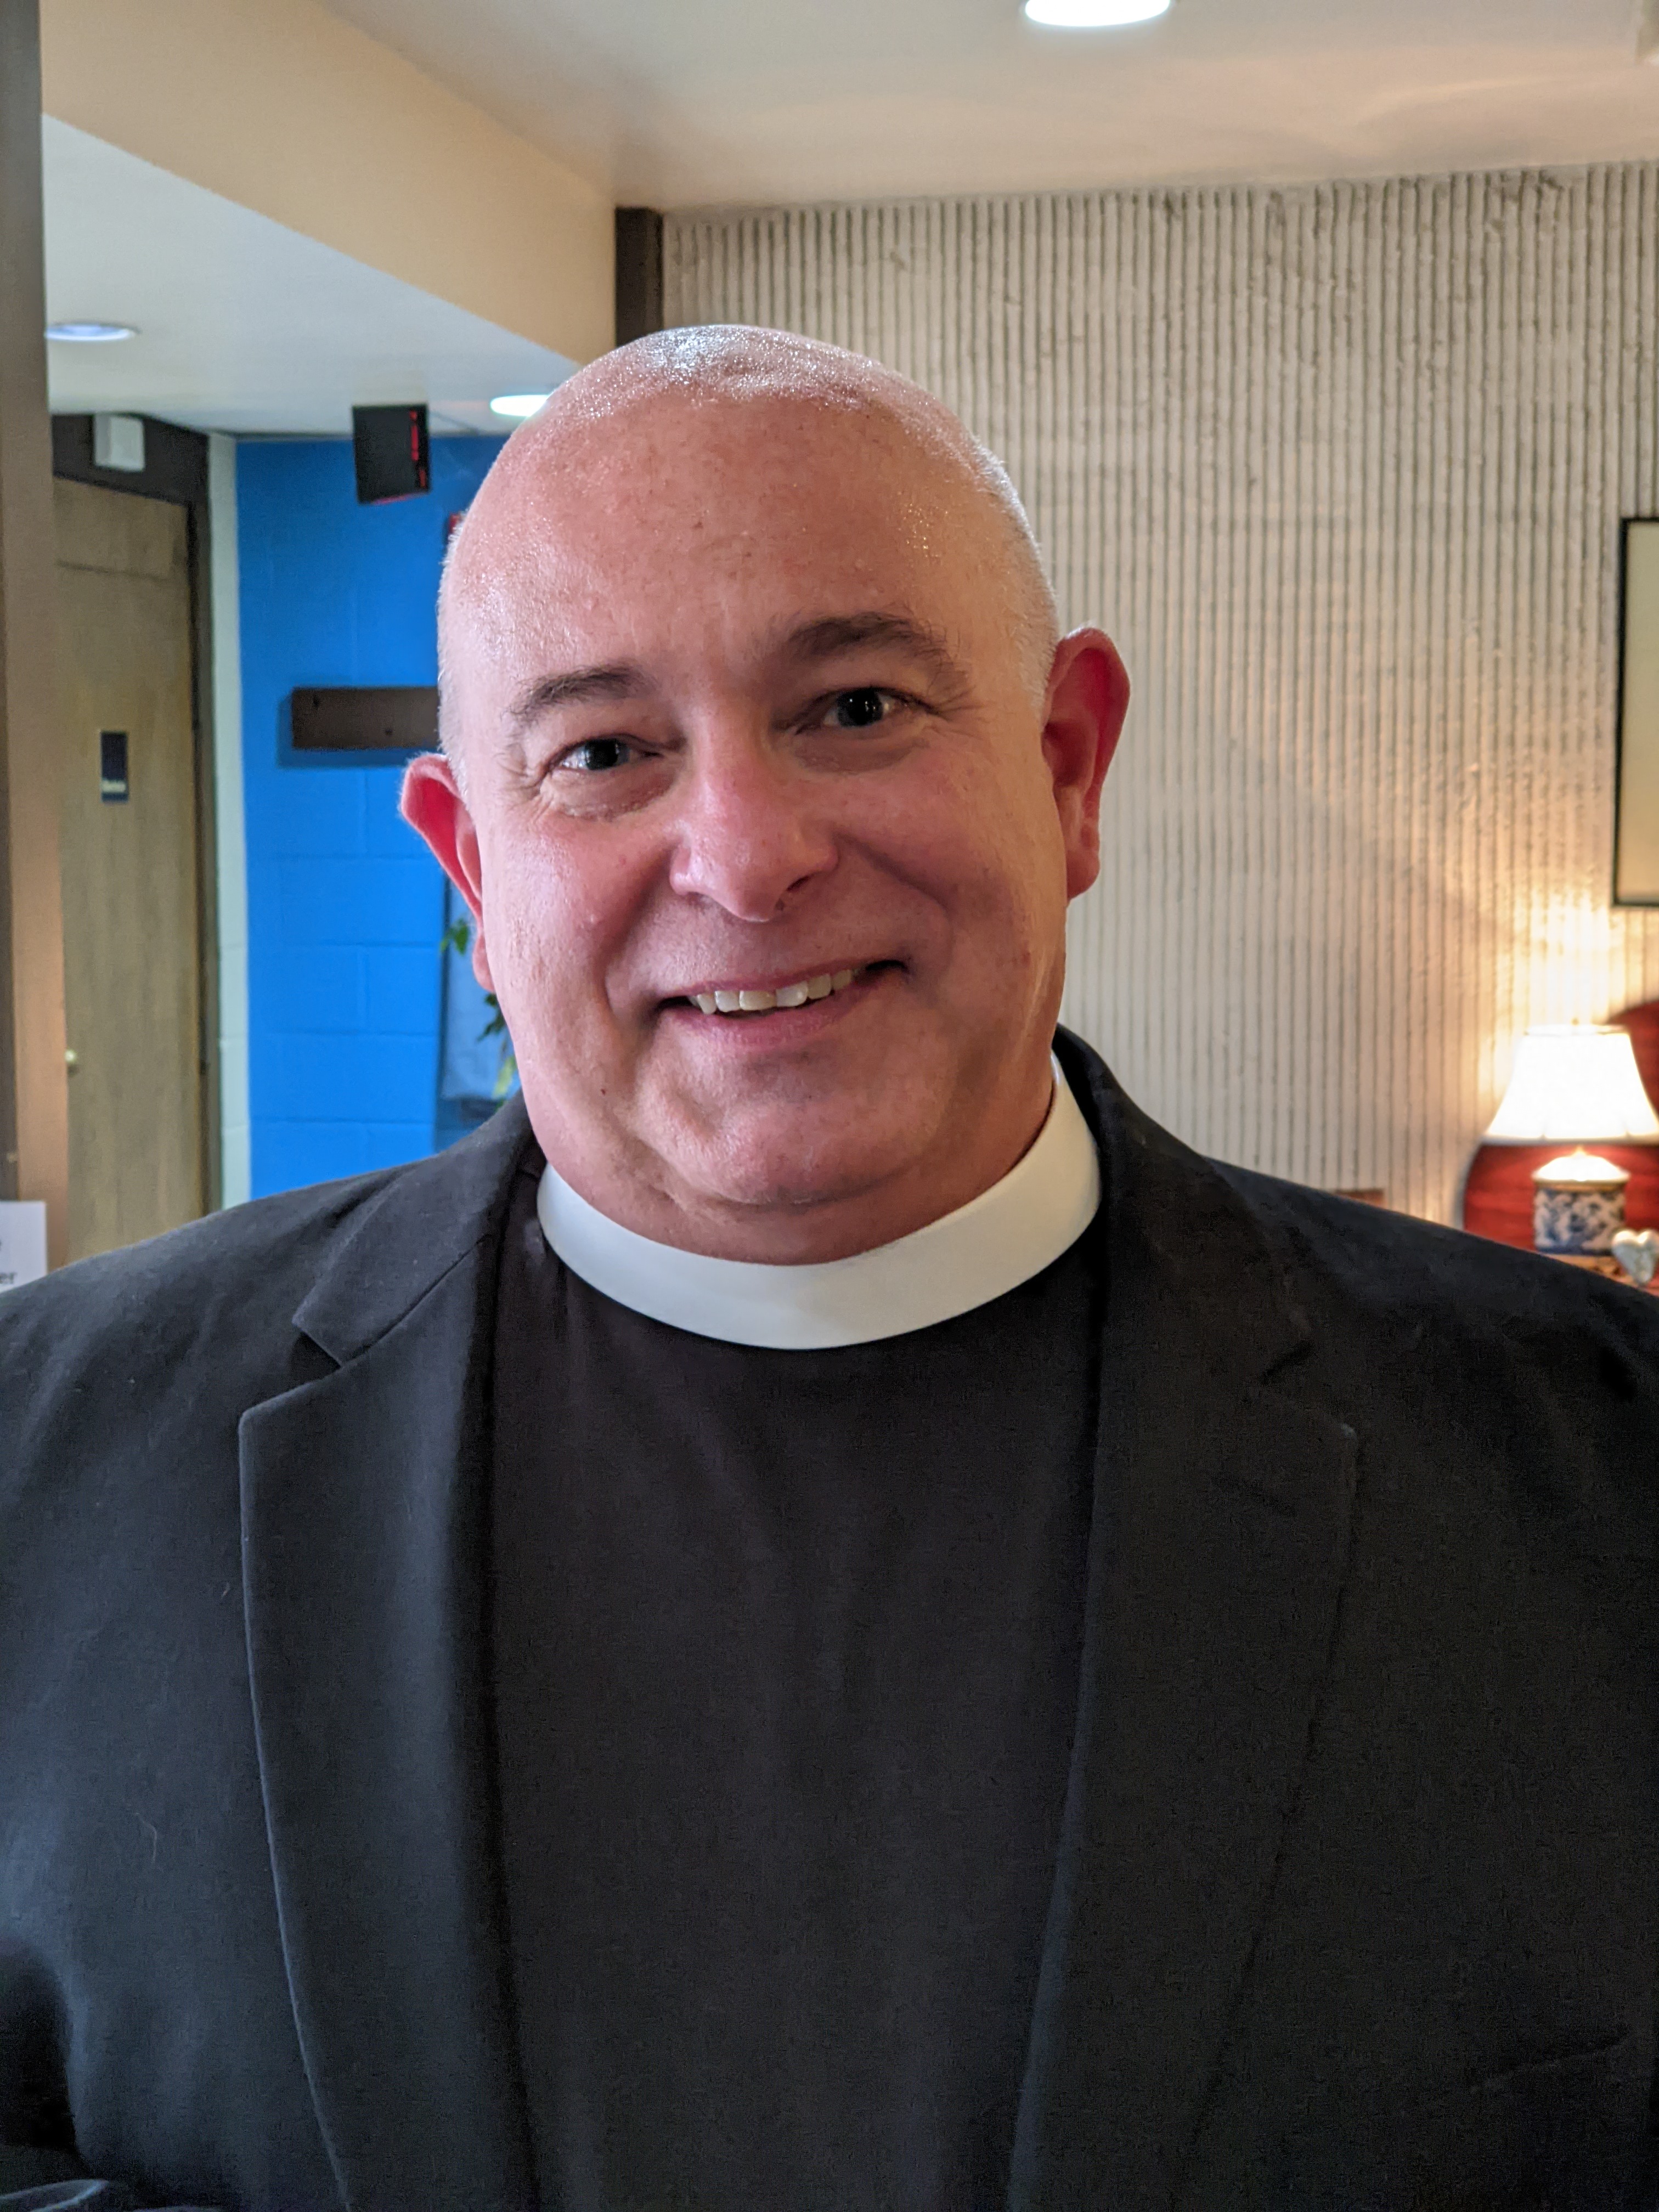 The Rev. Michael Cadaret